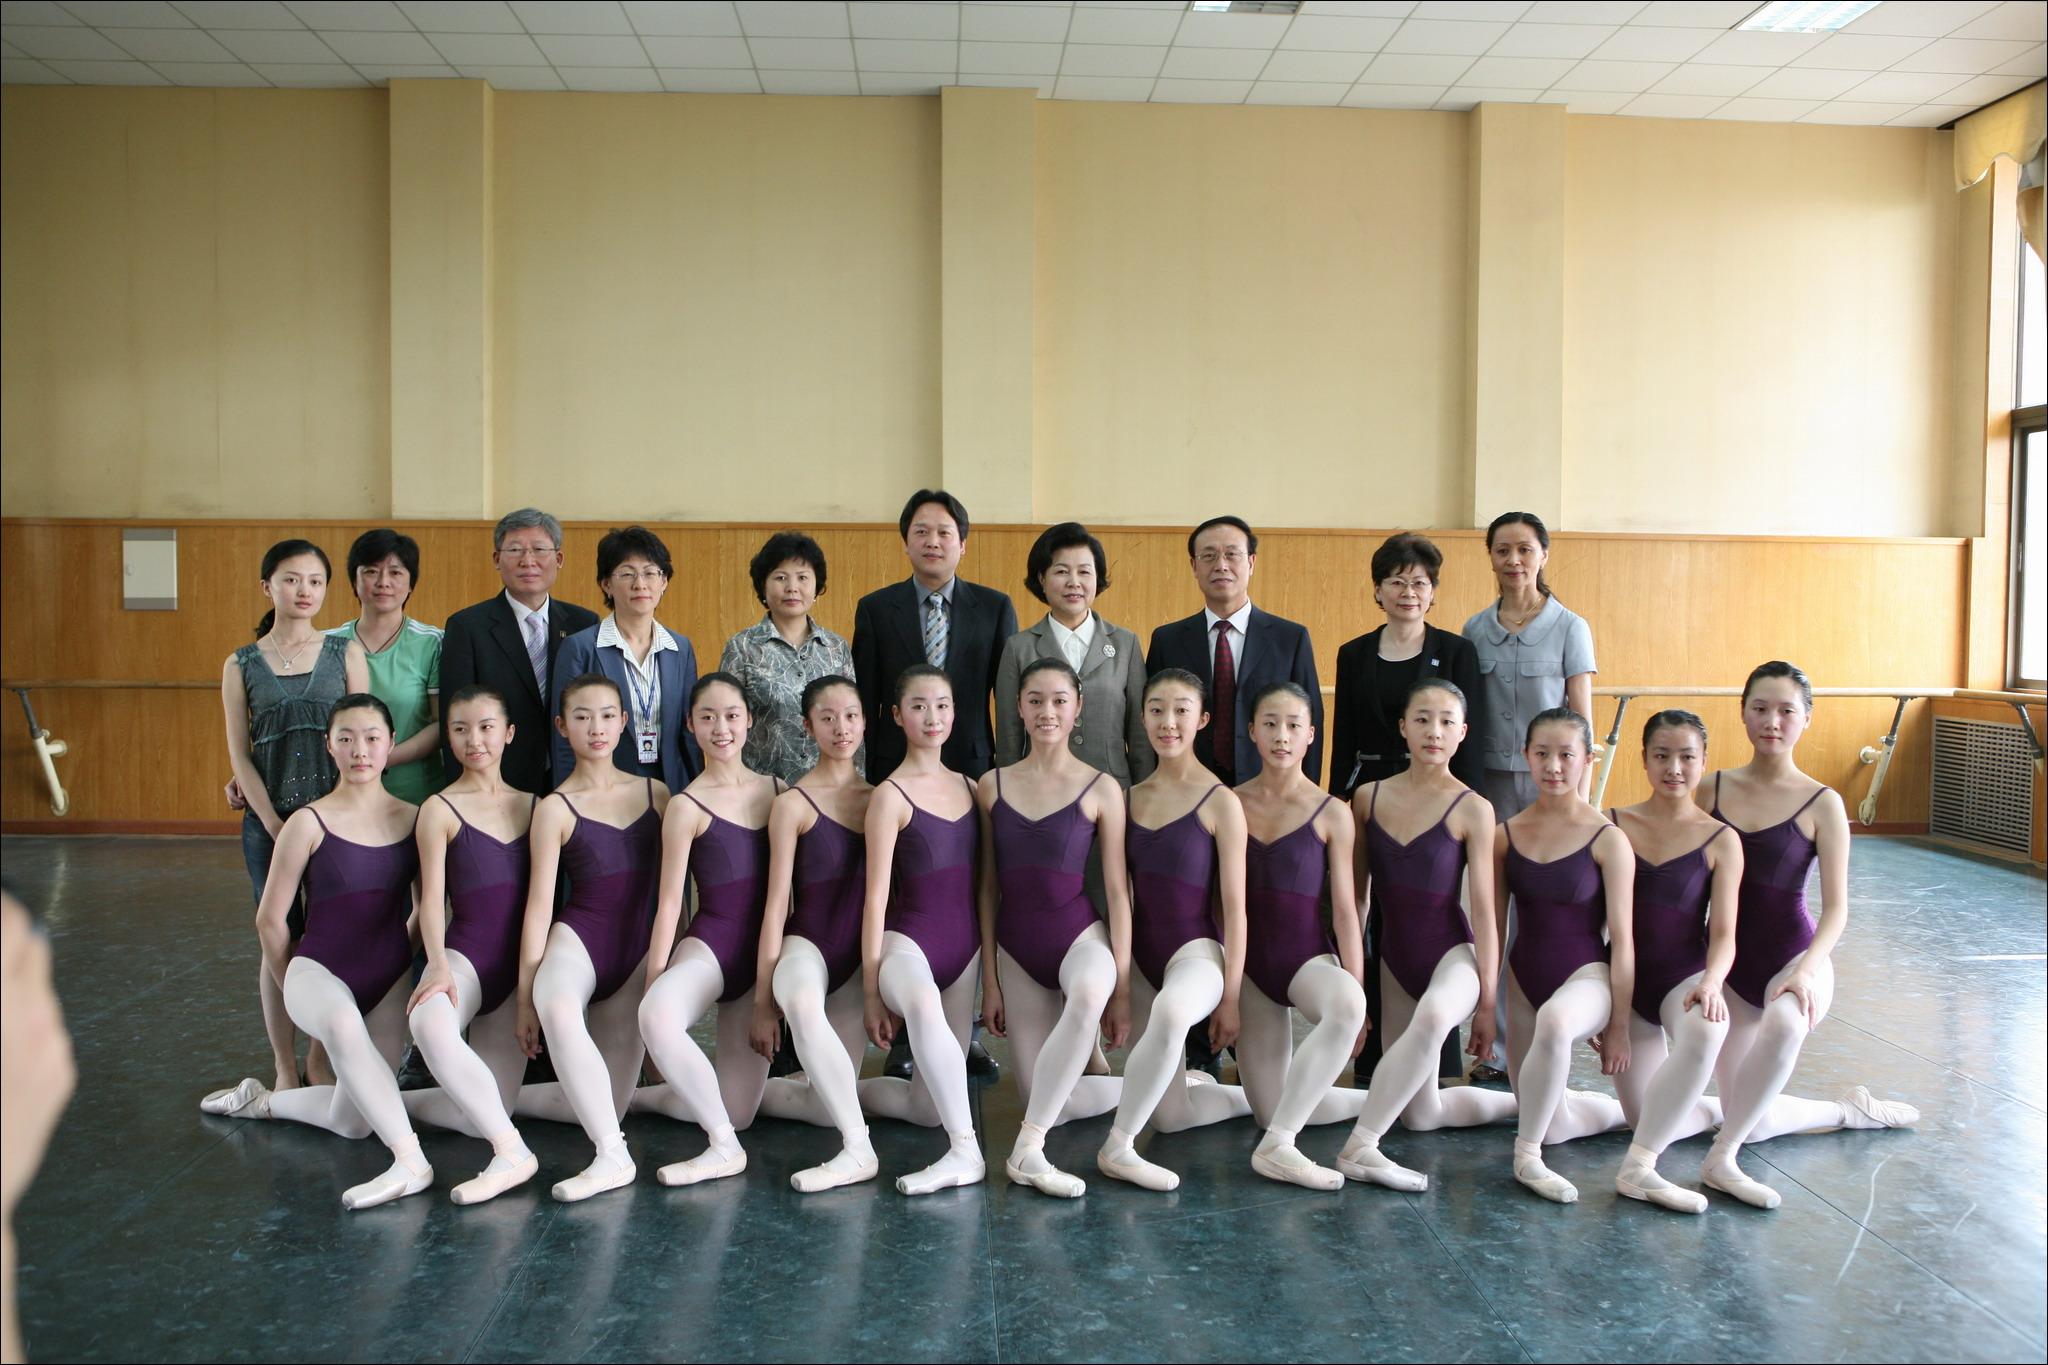 《北京舞蹈学院院报》 - 第134期 - 第01版